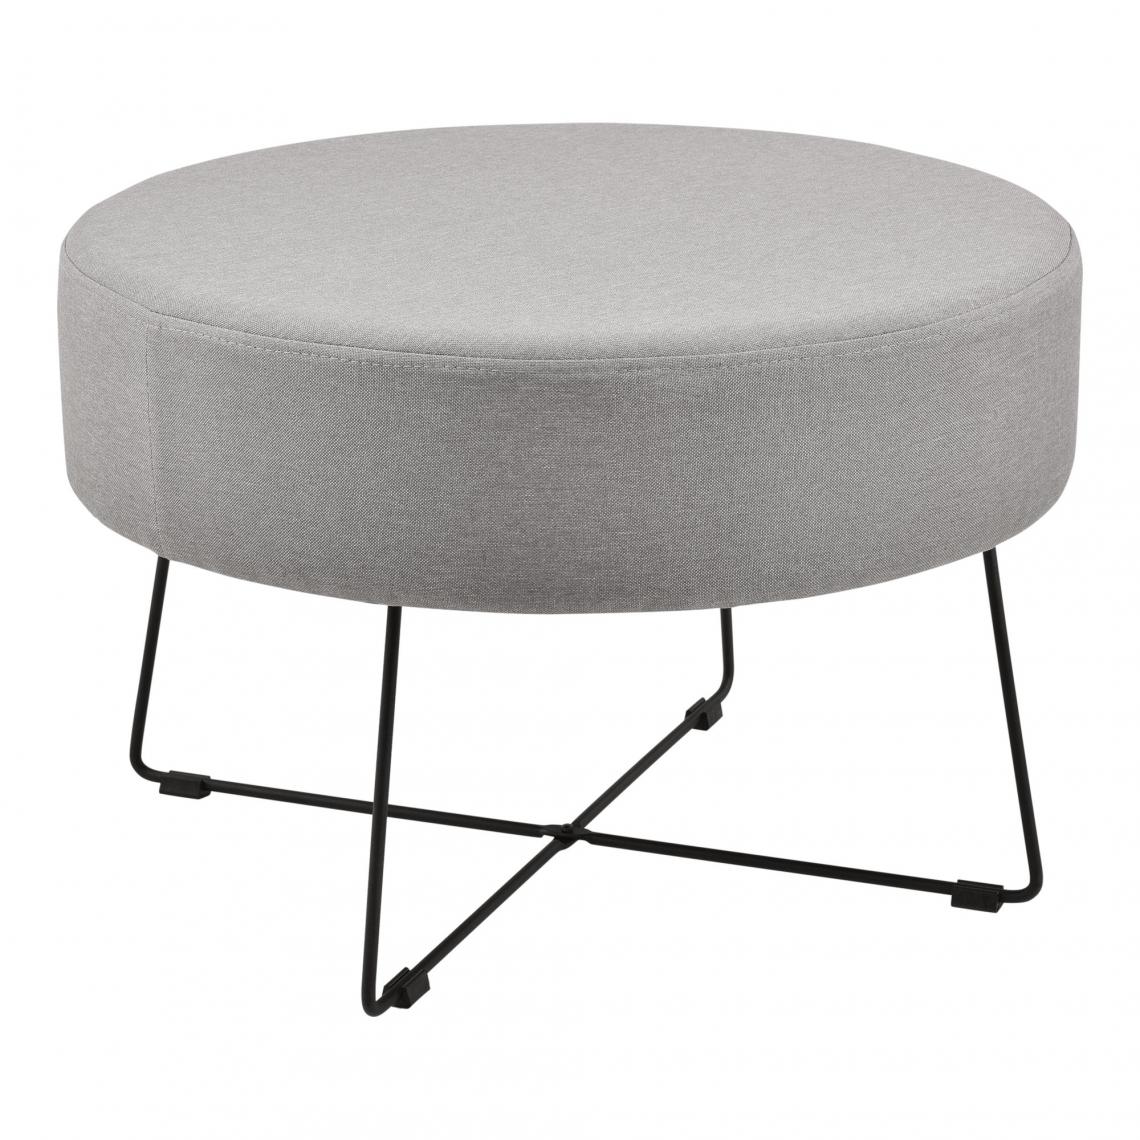 Helloshop26 - Table basse ronde repose pieds textile métal 60 cm gris et noir 03_0004153 - Tables basses